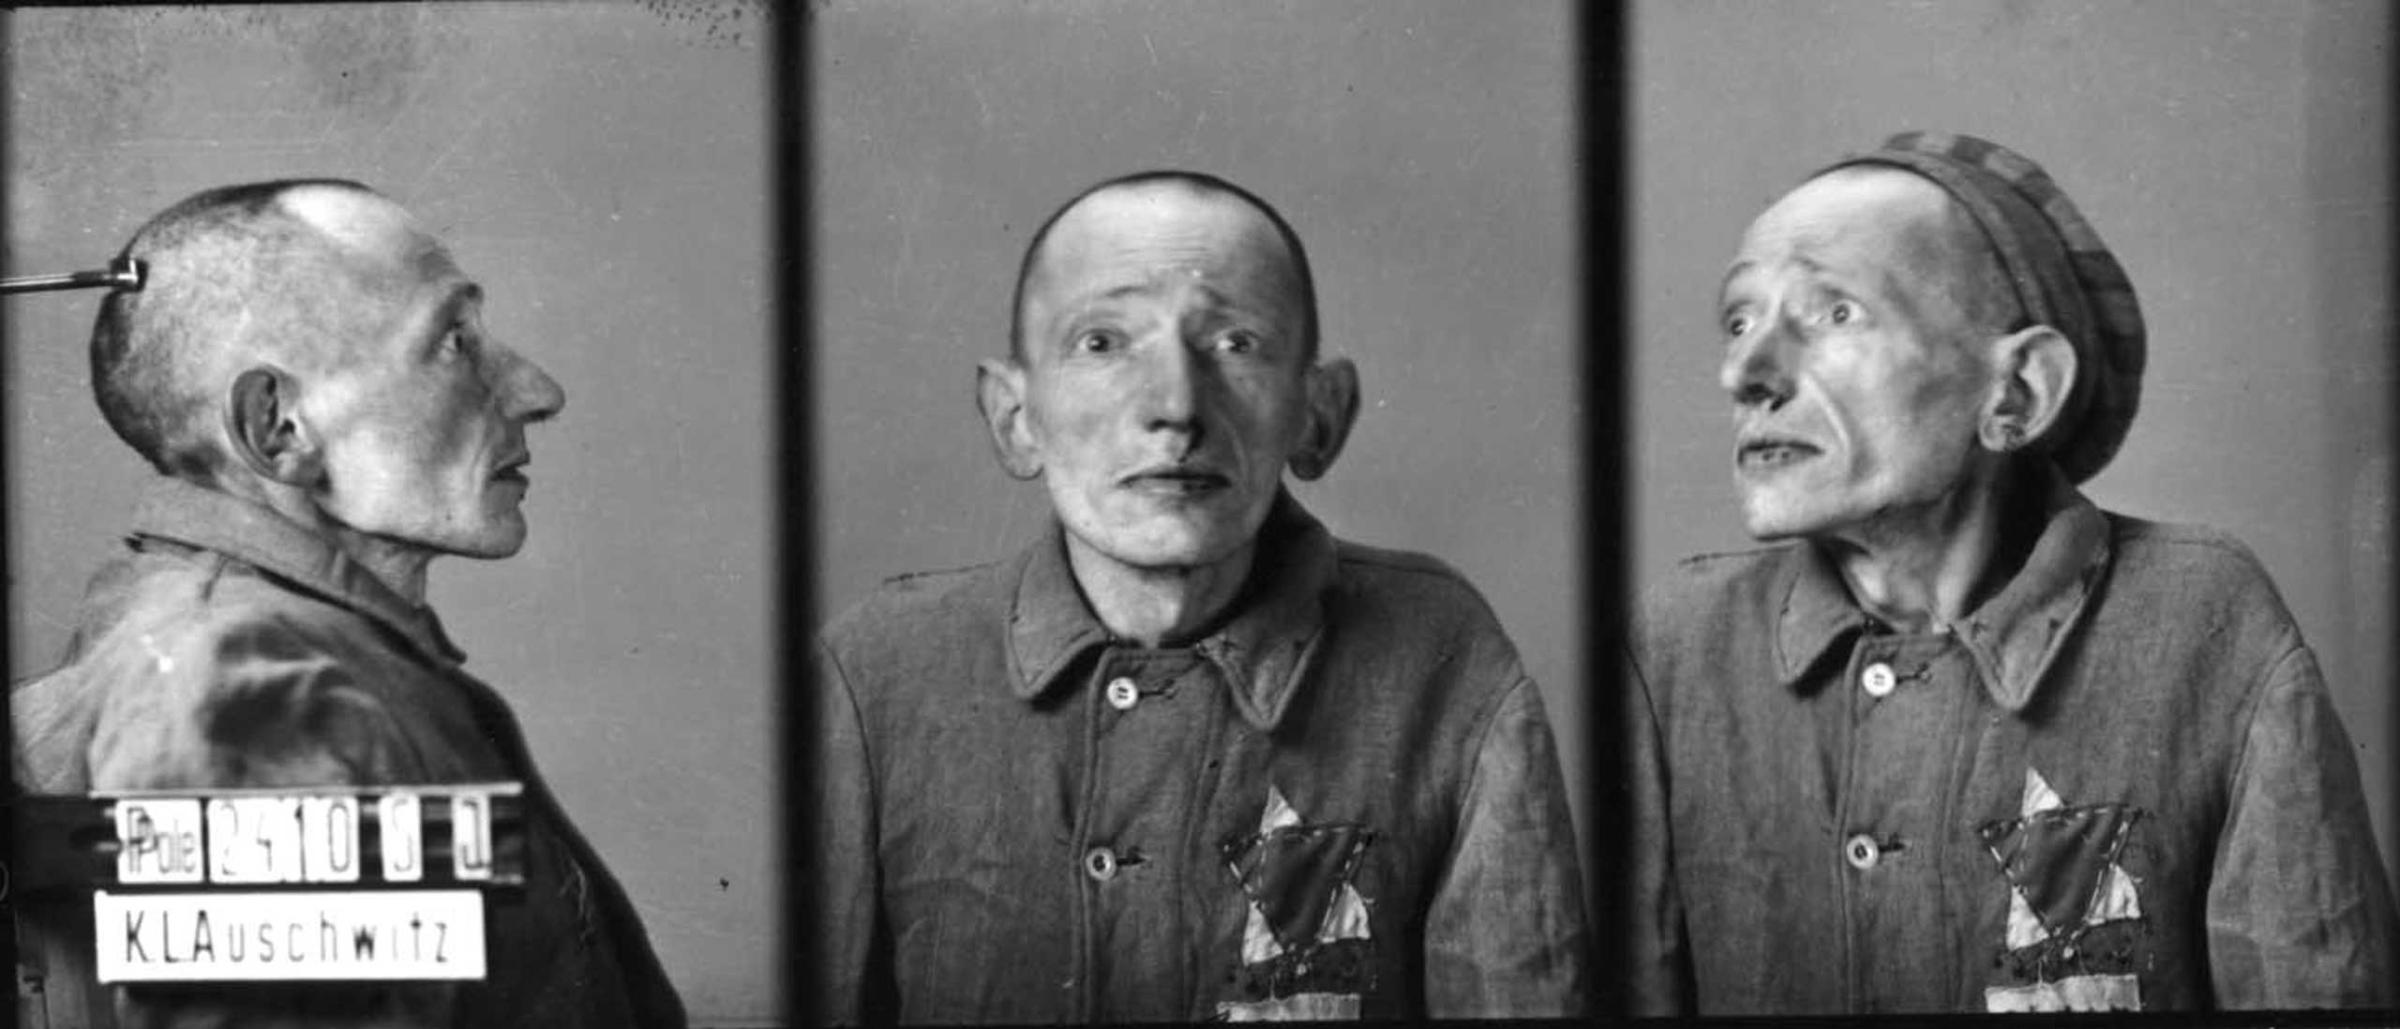 Prisoner no. 24105. at Auschwitz, Poland, c. 1940-45.